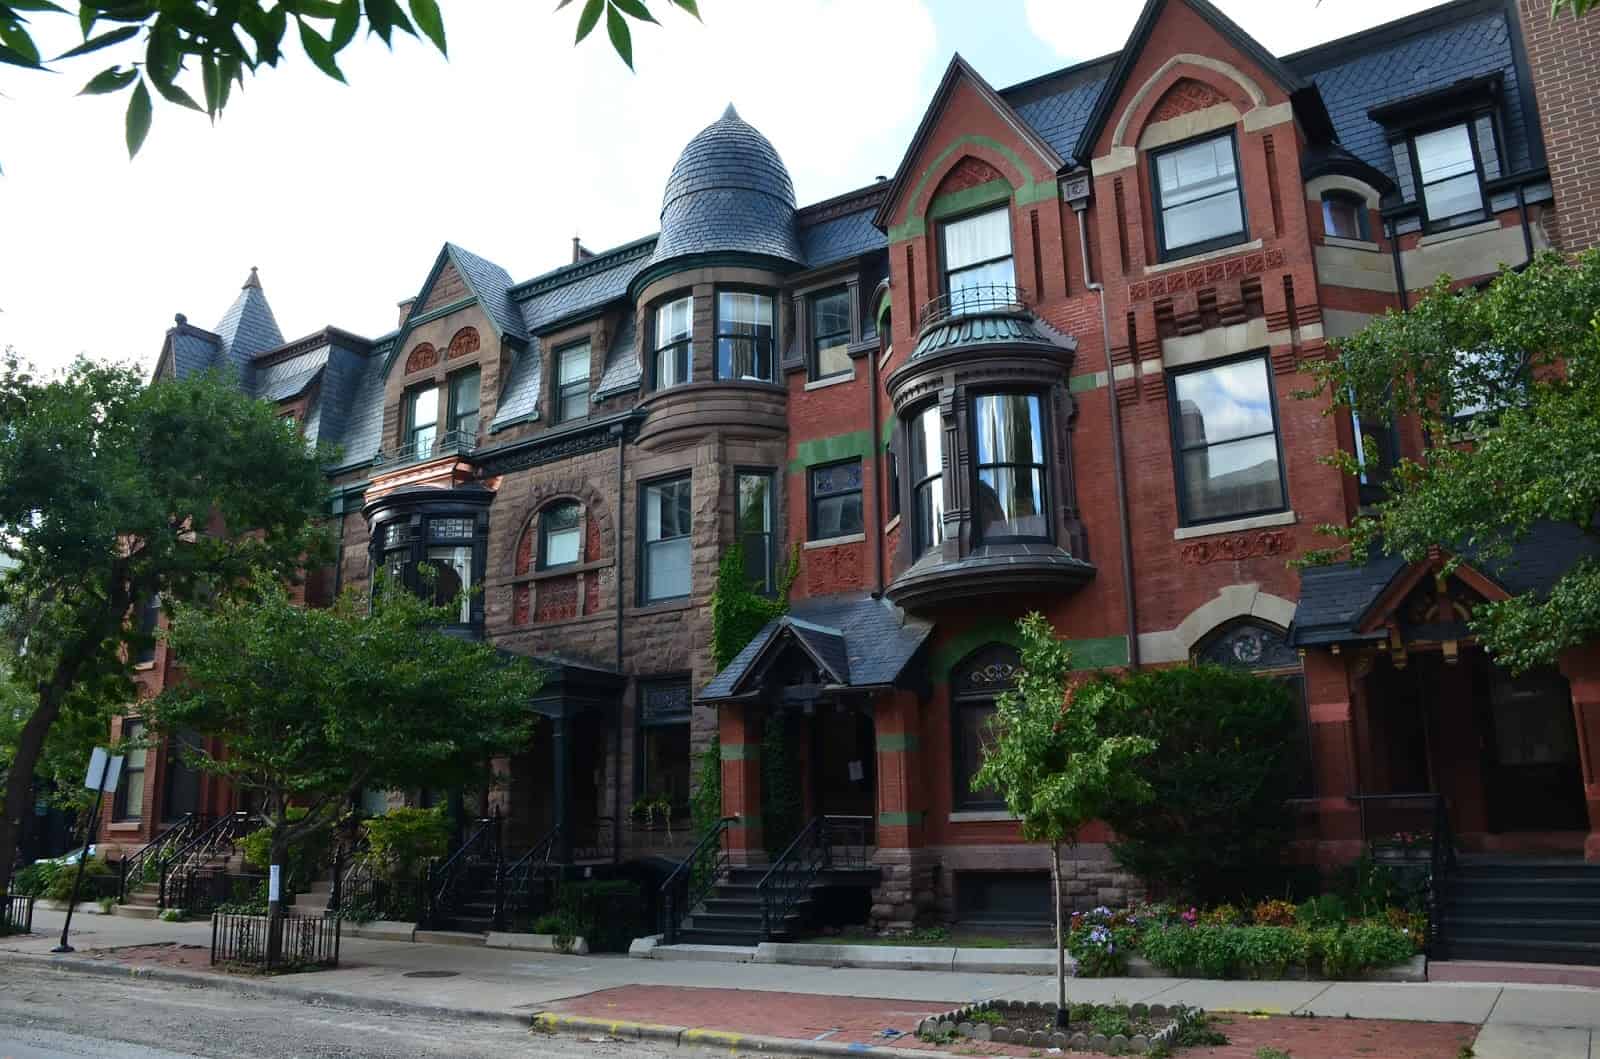 Olsen-Hansen Row Houses in Old Town Chicago